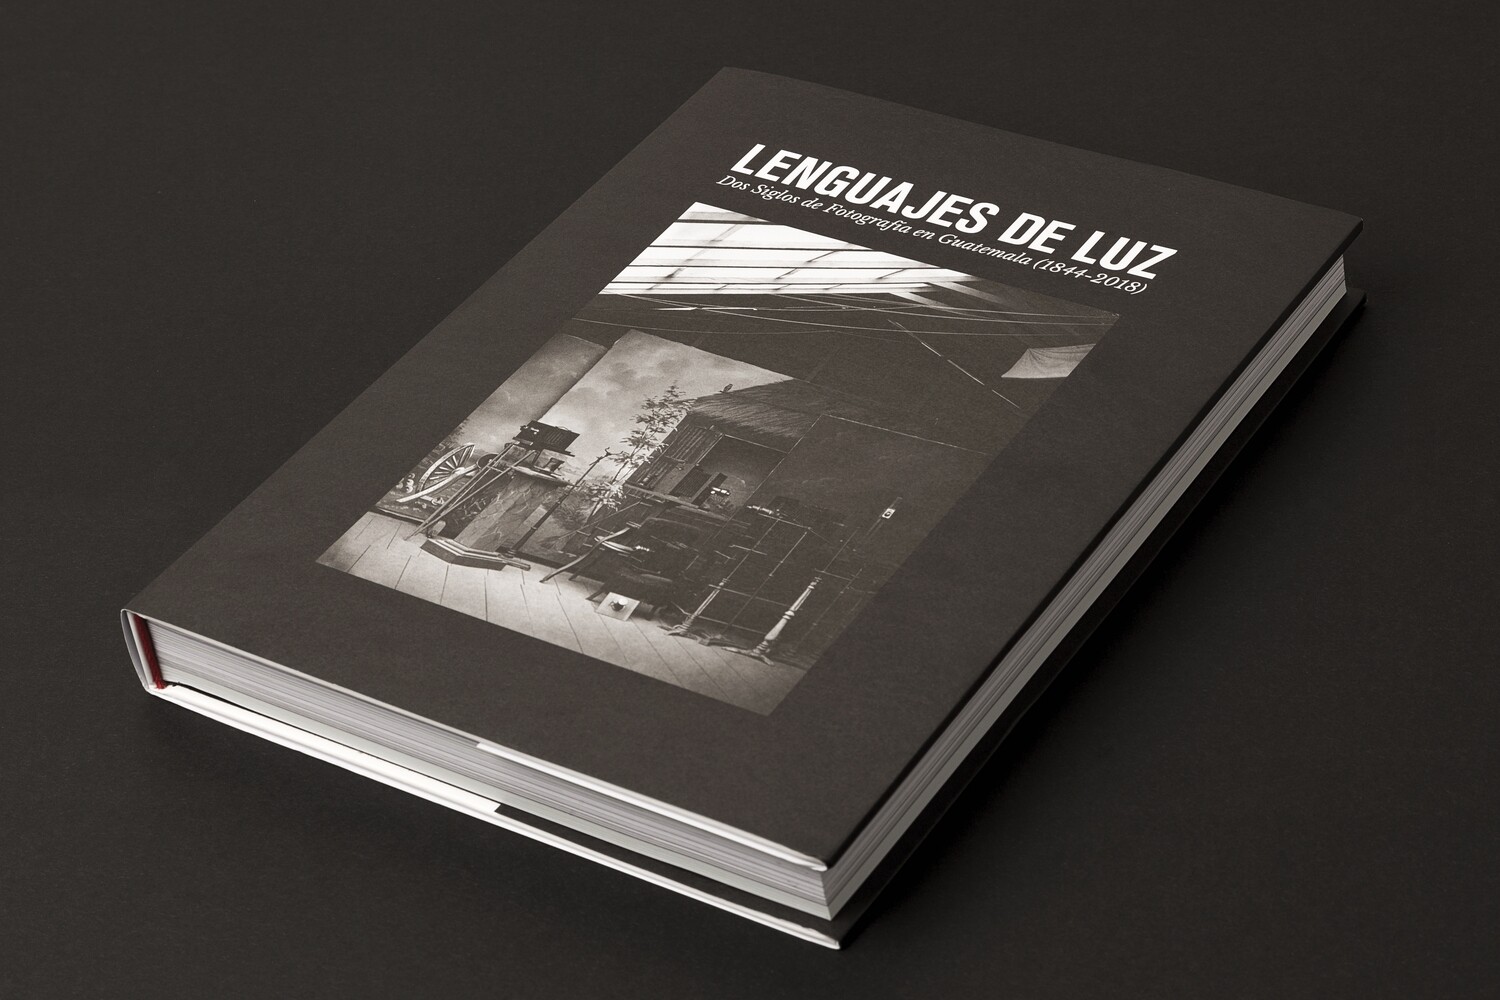 Lenguajes de Luz. 
Dos siglos de fotografía en Guatemala (1844-2018)